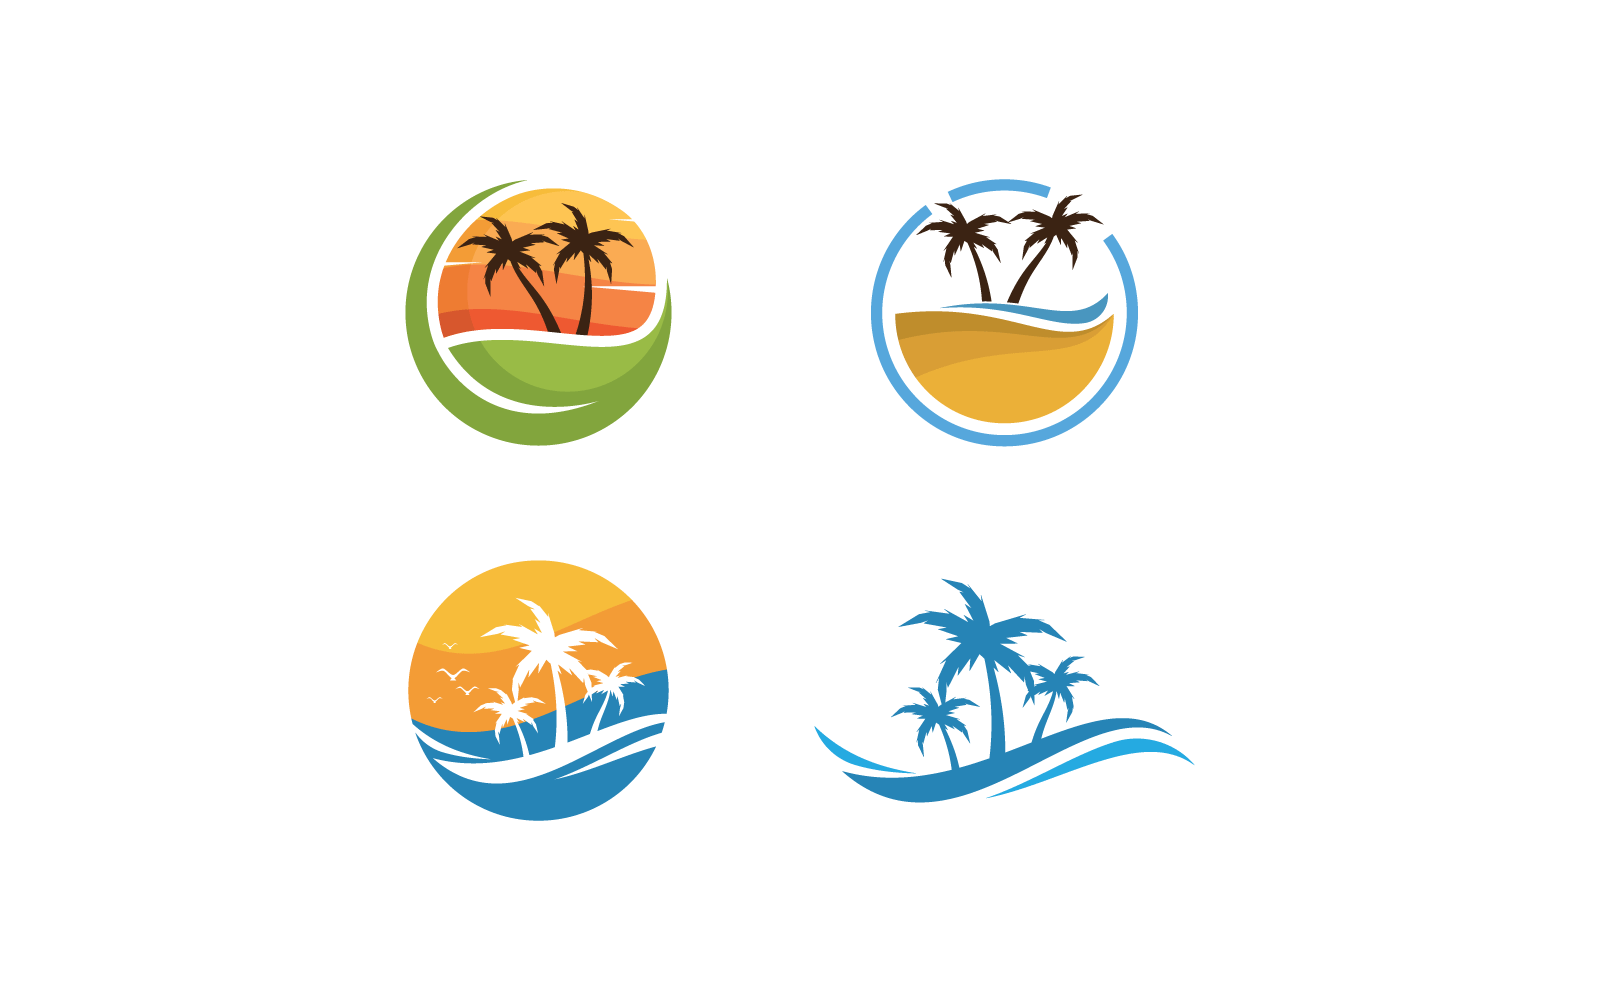 Palm tree leaf illustration logo vector flat design